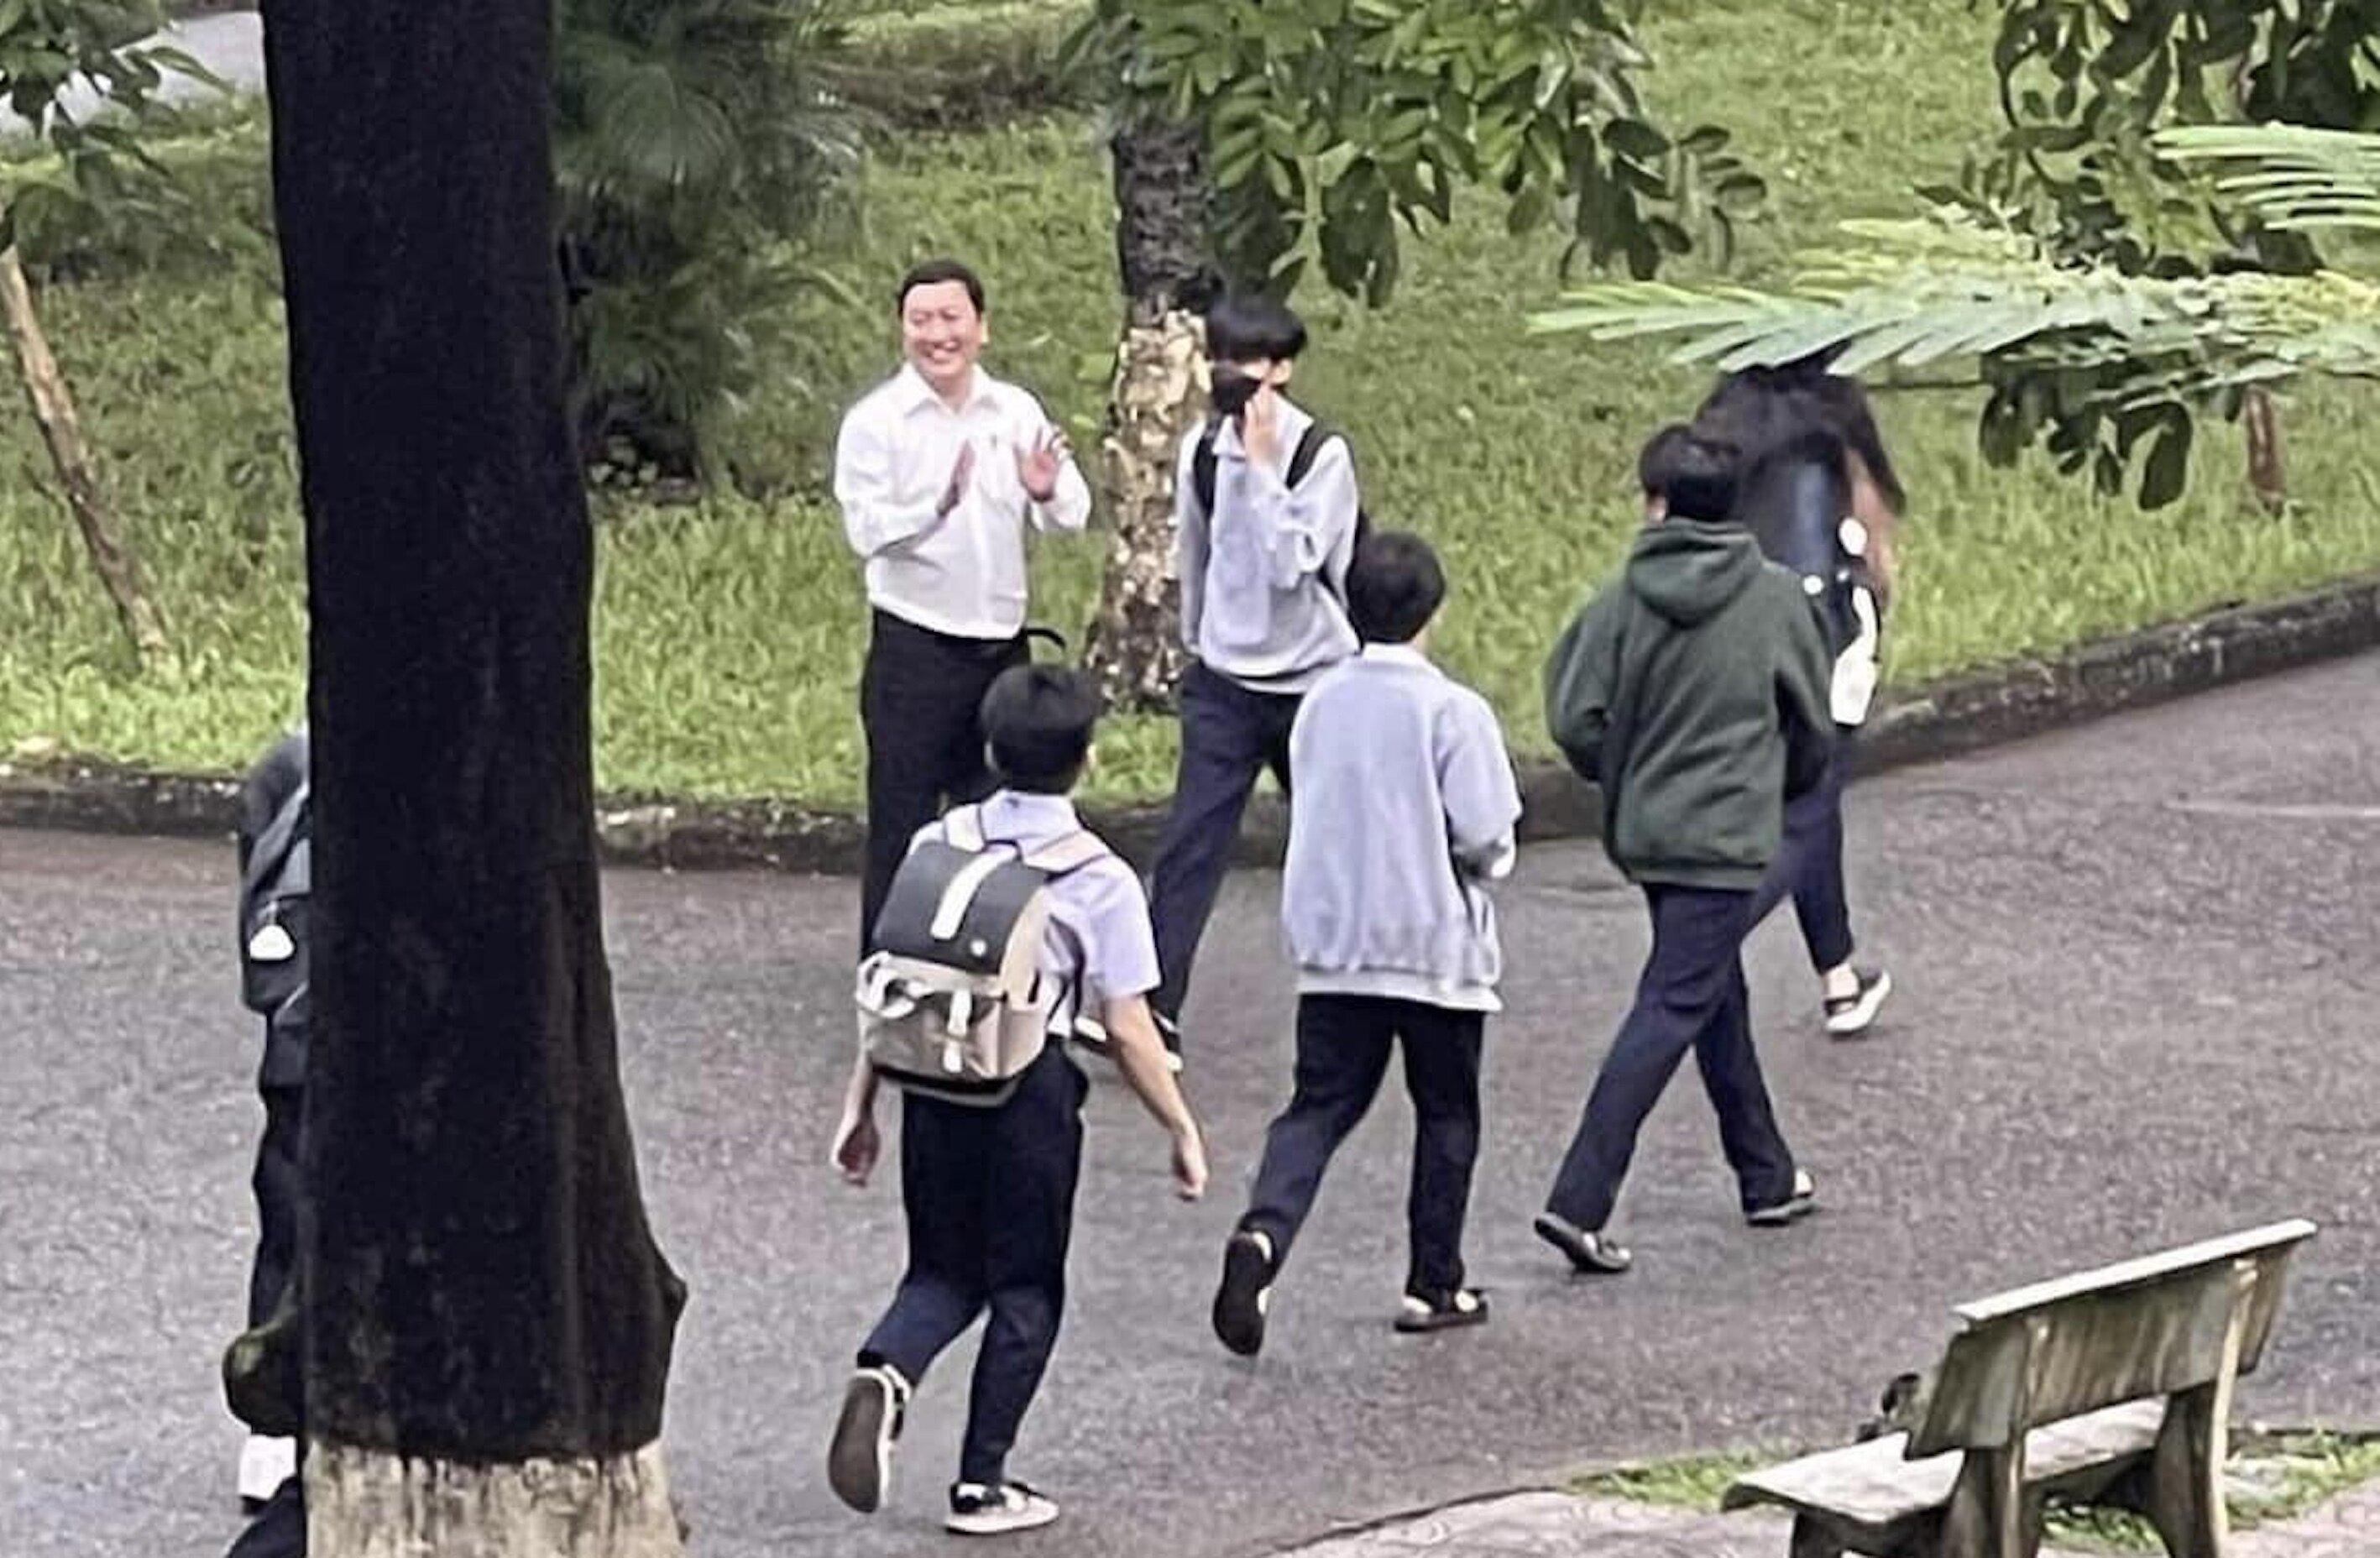 Hình ảnh ông Sơn đứng ở sân trường chào đón các học sinh được đưa lên mạng xã hội và lập tức nhận mưa lời khen. (Ảnh: Fanpage THPT Hai Bà Trưng - TP Huế)